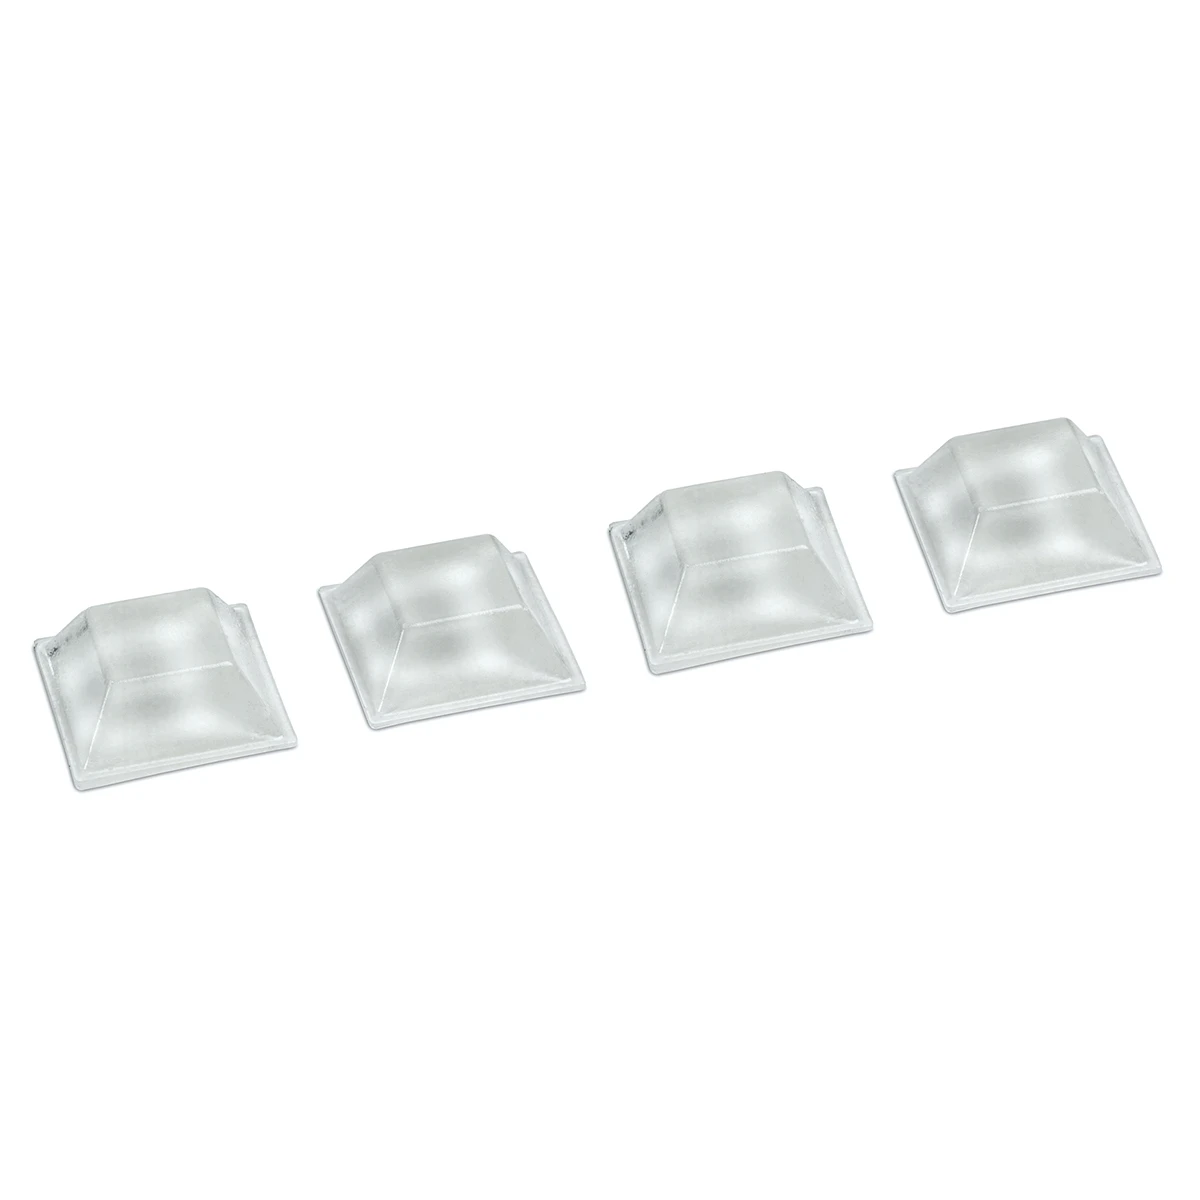 Schutzpuffer für Glasplatten, selbstklebend, 7719605020200